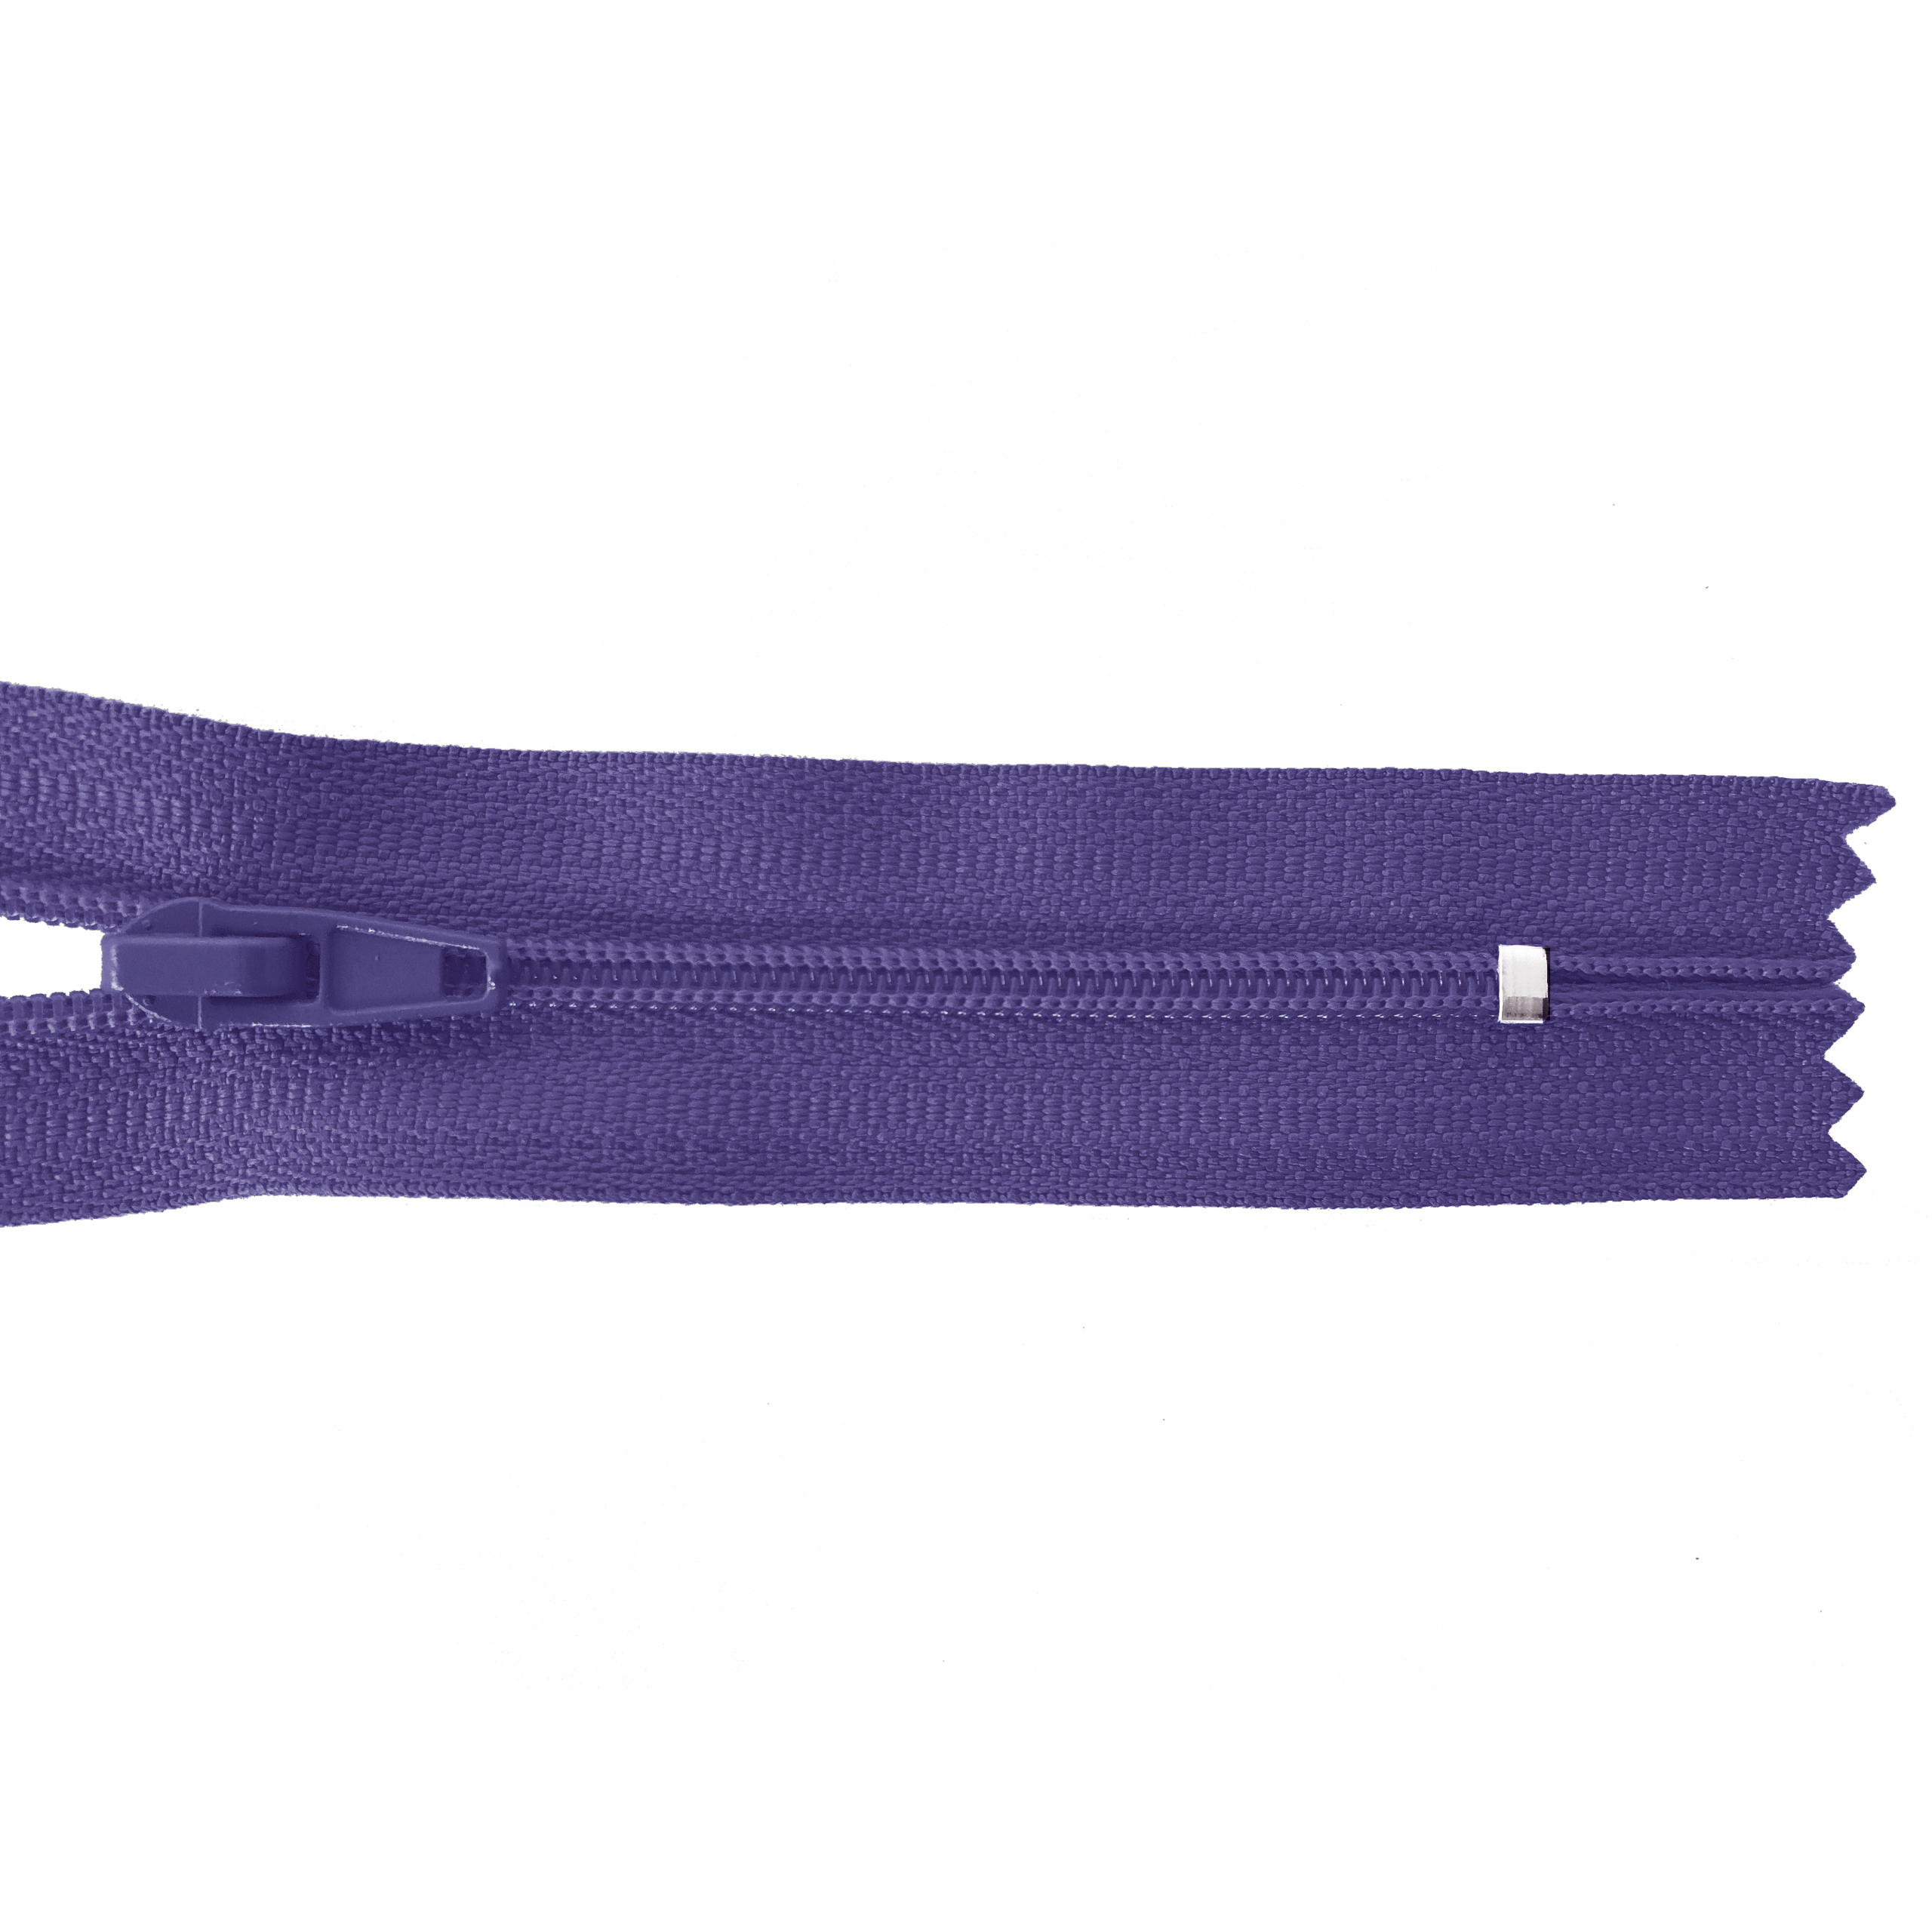 Reißverschluss 20cm, nicht teilbar, PES-Spirale fein, blauviolett, hochwertiger Marken-Reißverschluss von Rubi/Barcelona